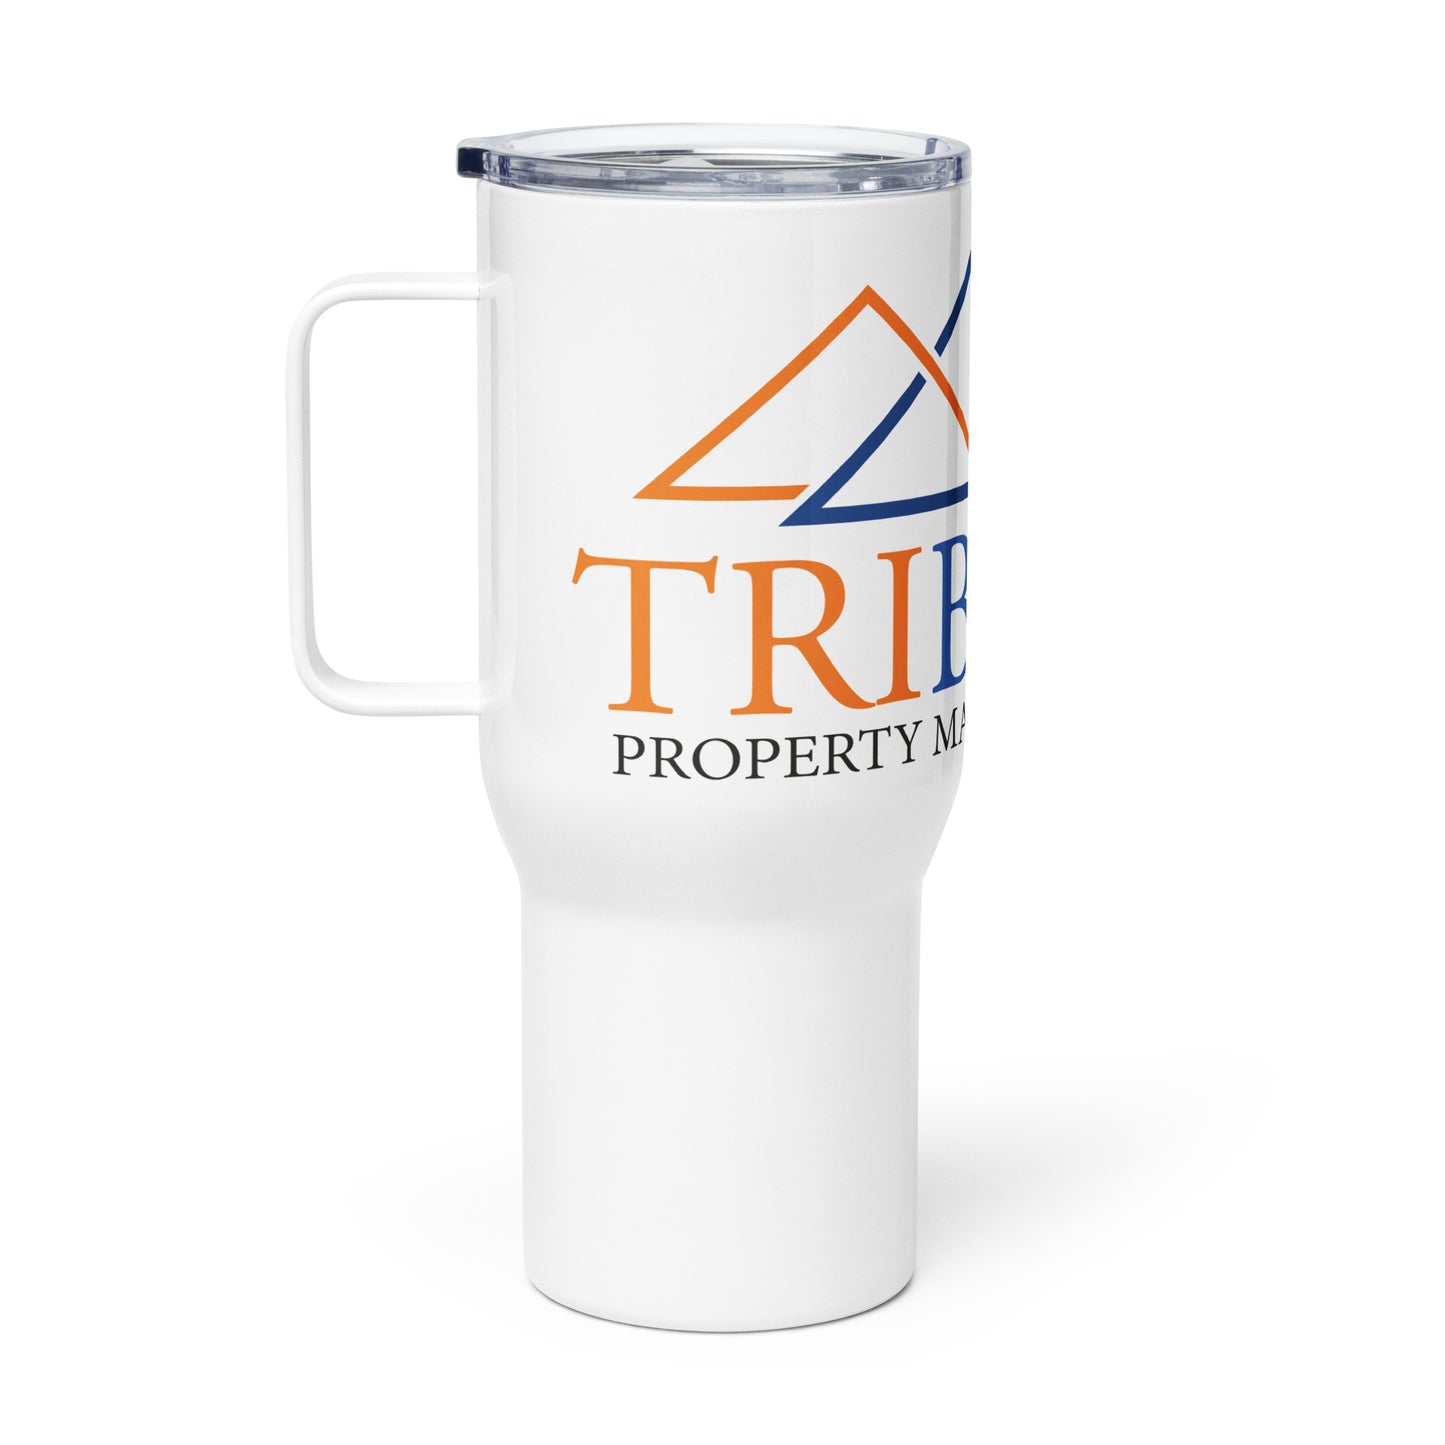 Tribond travel mug with a handle